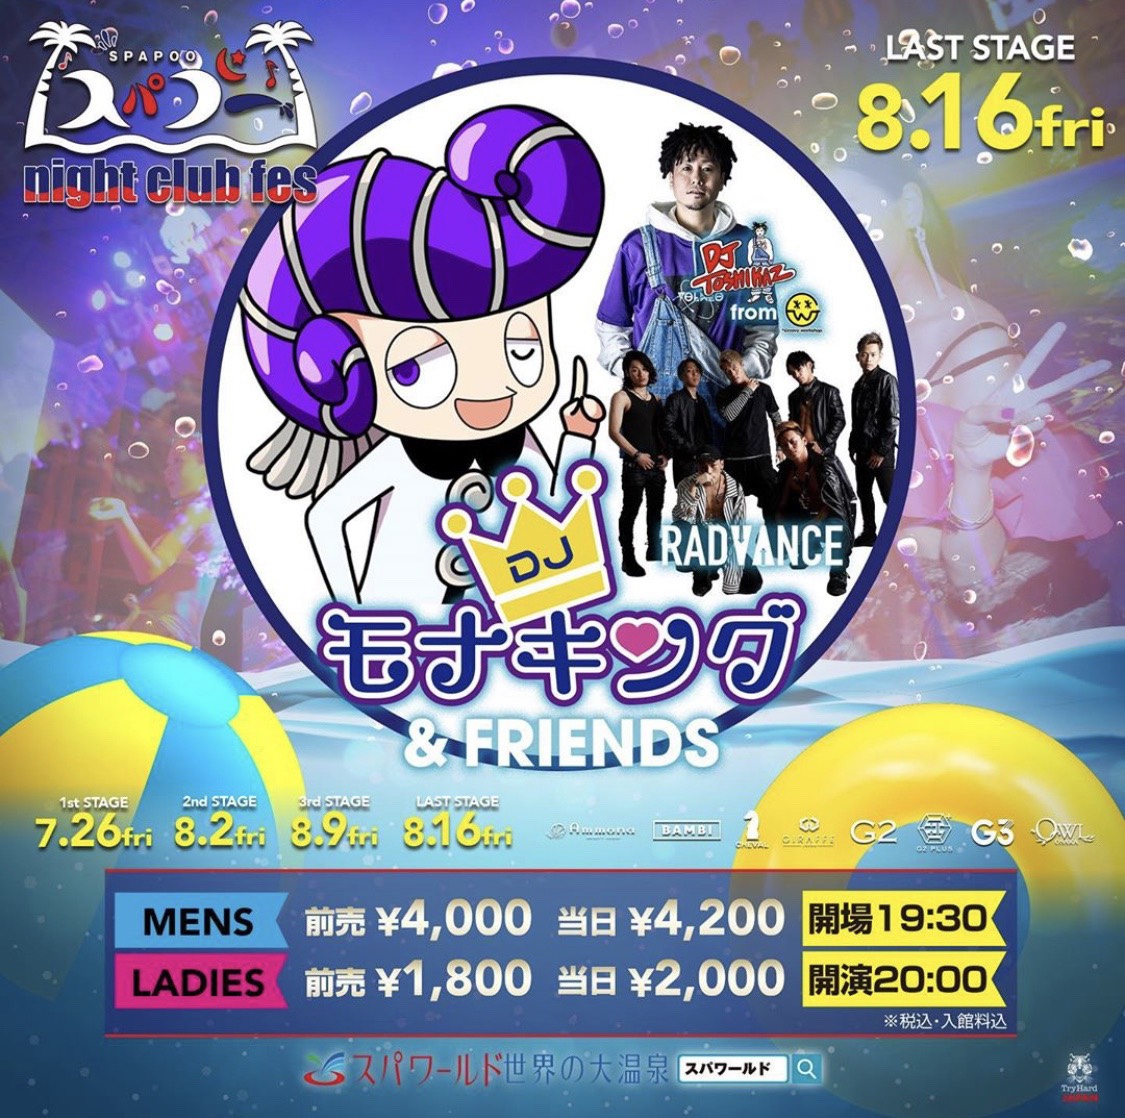 8月16日(金)大阪スパプーにモナキングとMC TOSHIKAZ & RADVANCEが登場！